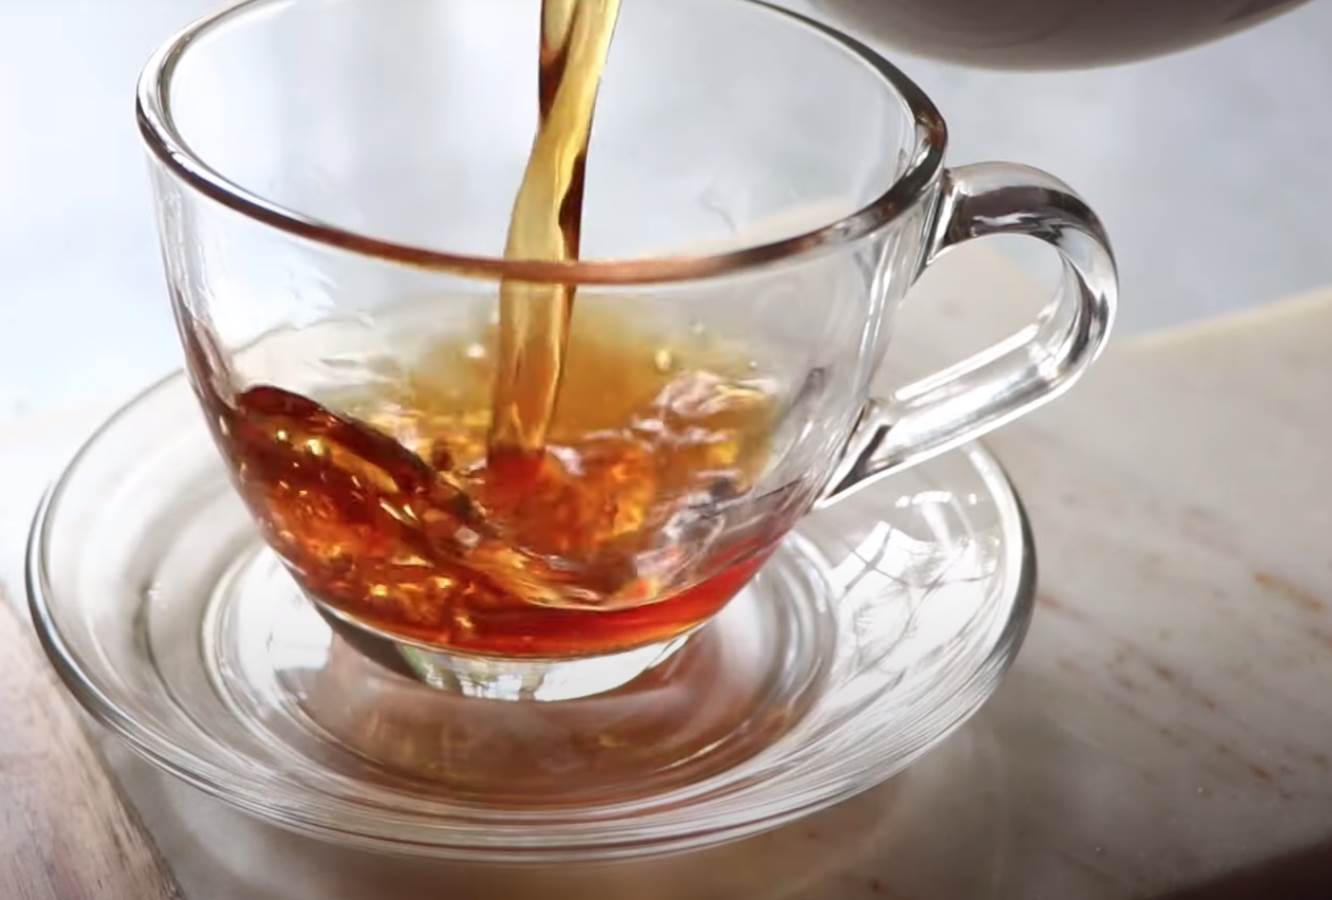  ruski čaj dobar za jačanje imuniteta 